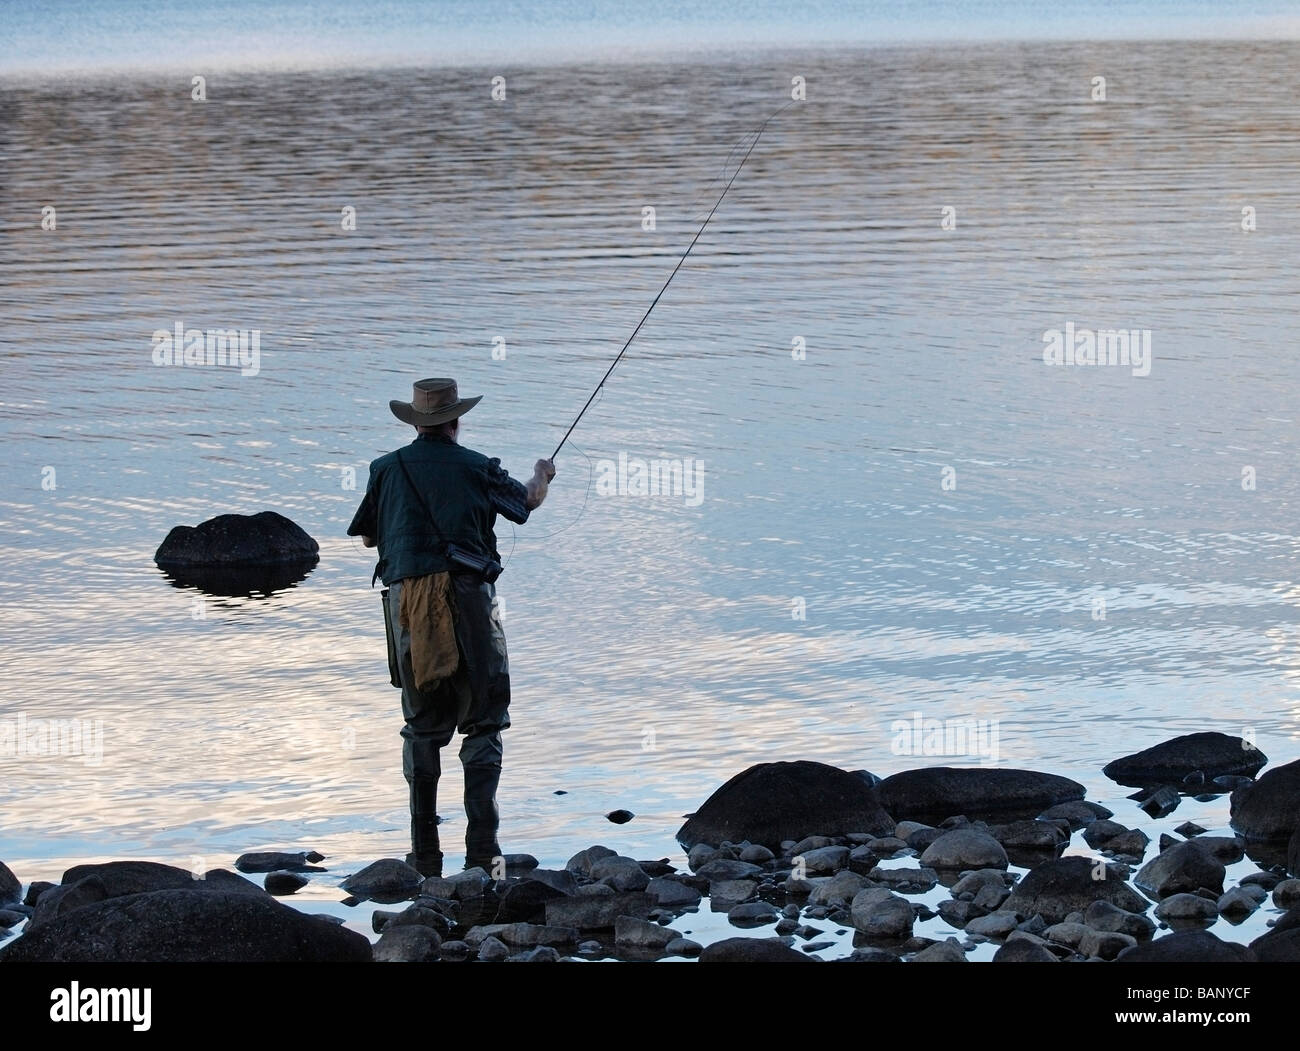 Plus homme seul pêcheur de mouche Pêche sur le lac Sainte Claire Tasmanie Australie Banque D'Images